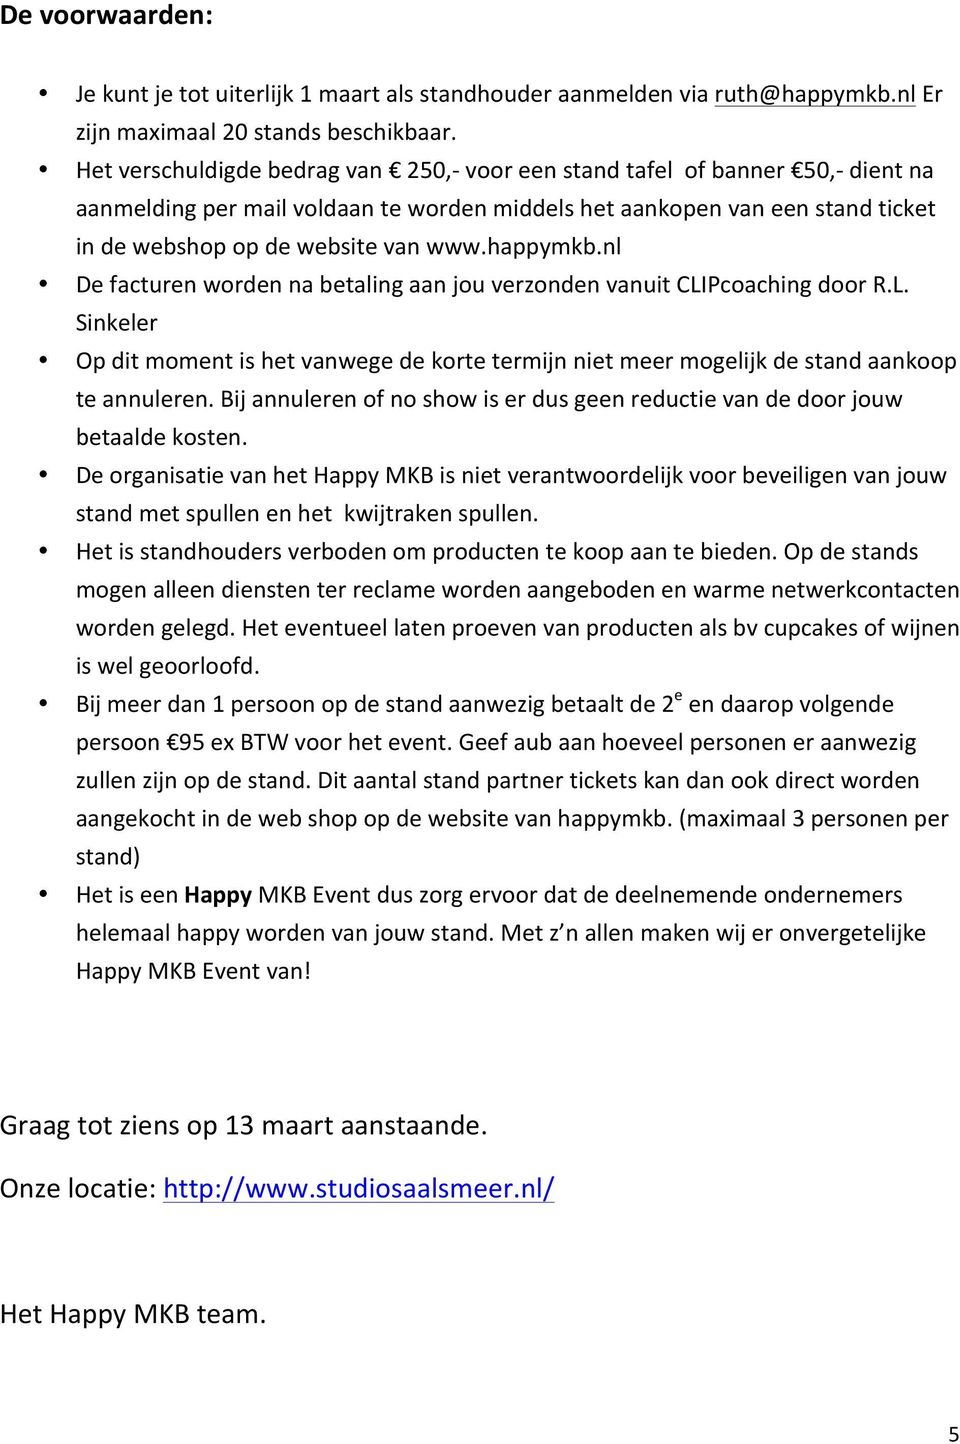 happymkb.nl De facturen worden na betaling aan jou verzonden vanuit CLIPcoaching door R.L. Sinkeler Op dit moment is het vanwege de korte termijn niet meer mogelijk de stand aankoop te annuleren.